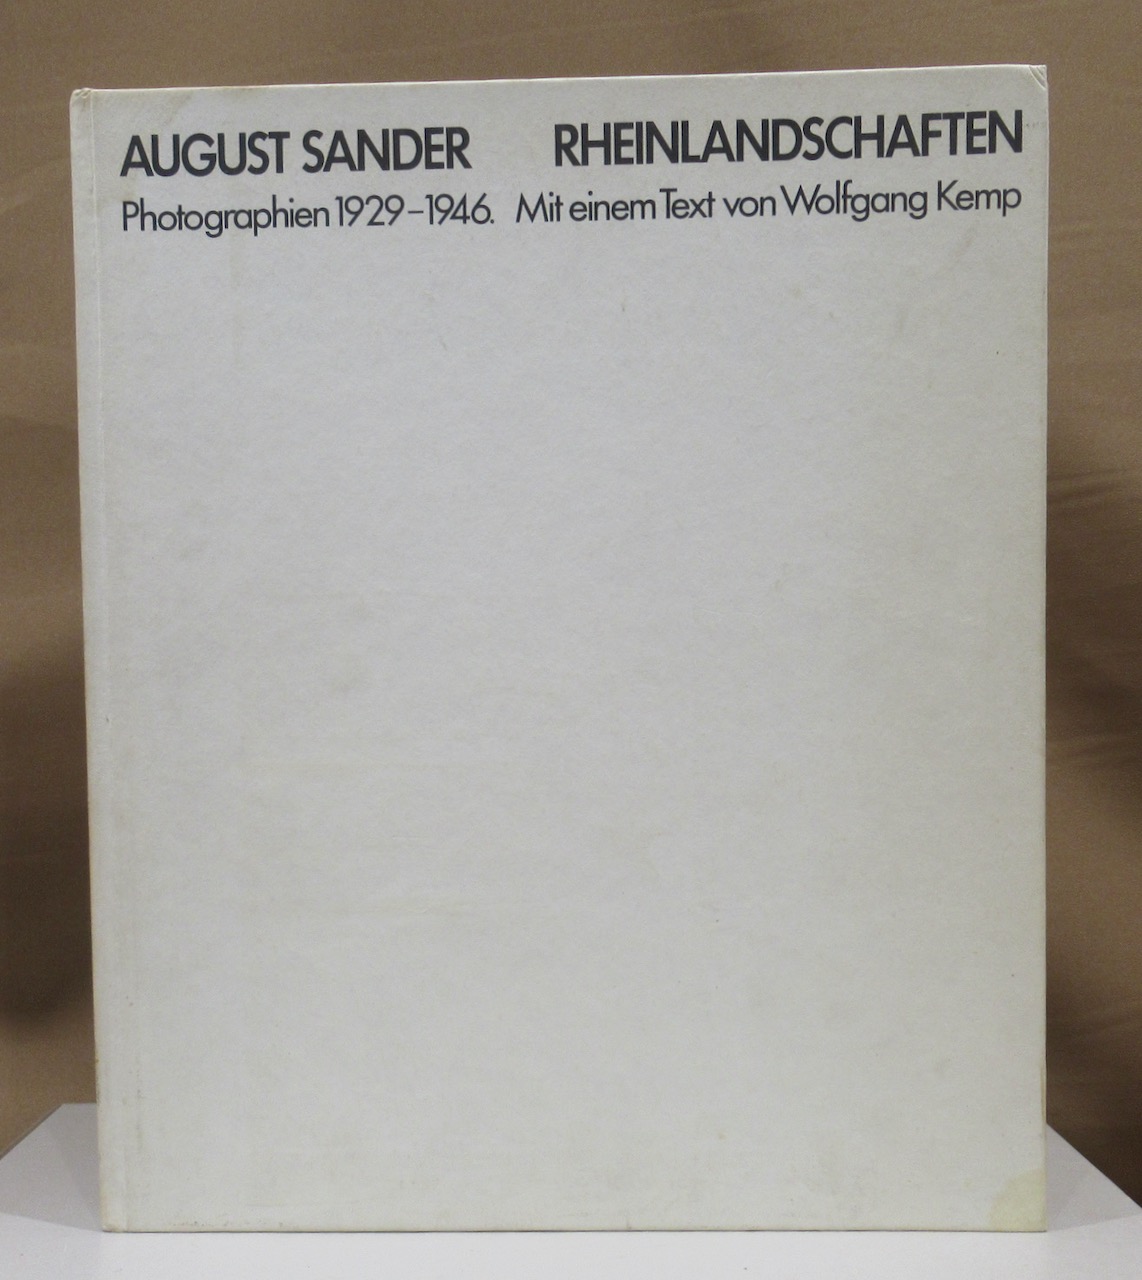 Rheinlandschaften. Photographien 1929 - 1946. Mit einem Text von Wolfgang Kemp. - Sander, August.